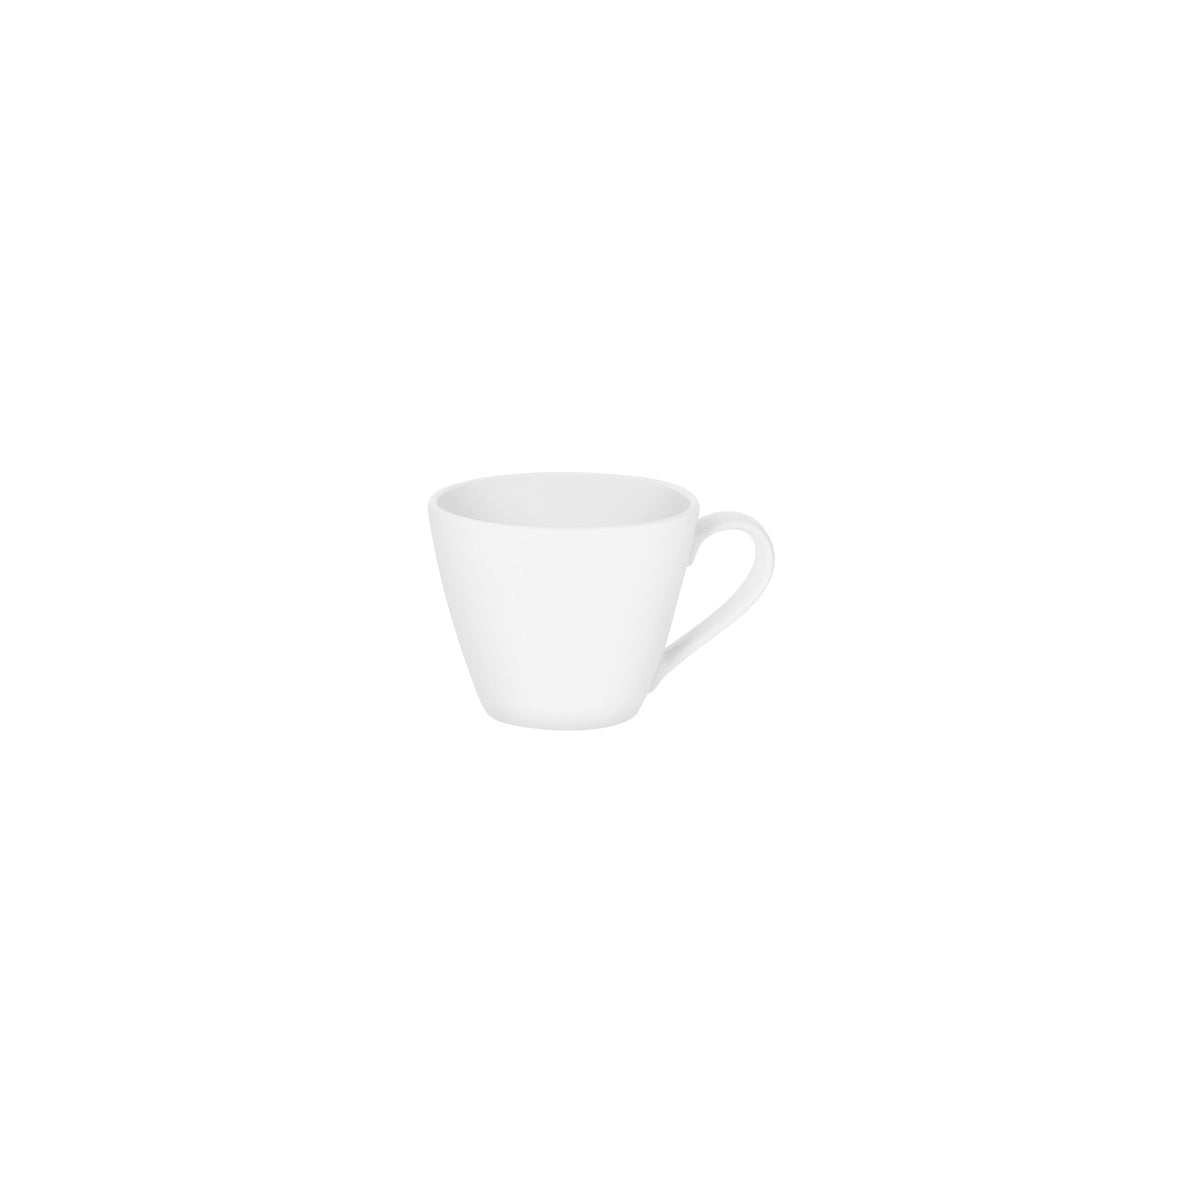 94916 Royal Porcelain White Album Espresso Cup 100ml Tomkin Australia Hospitality Supplies